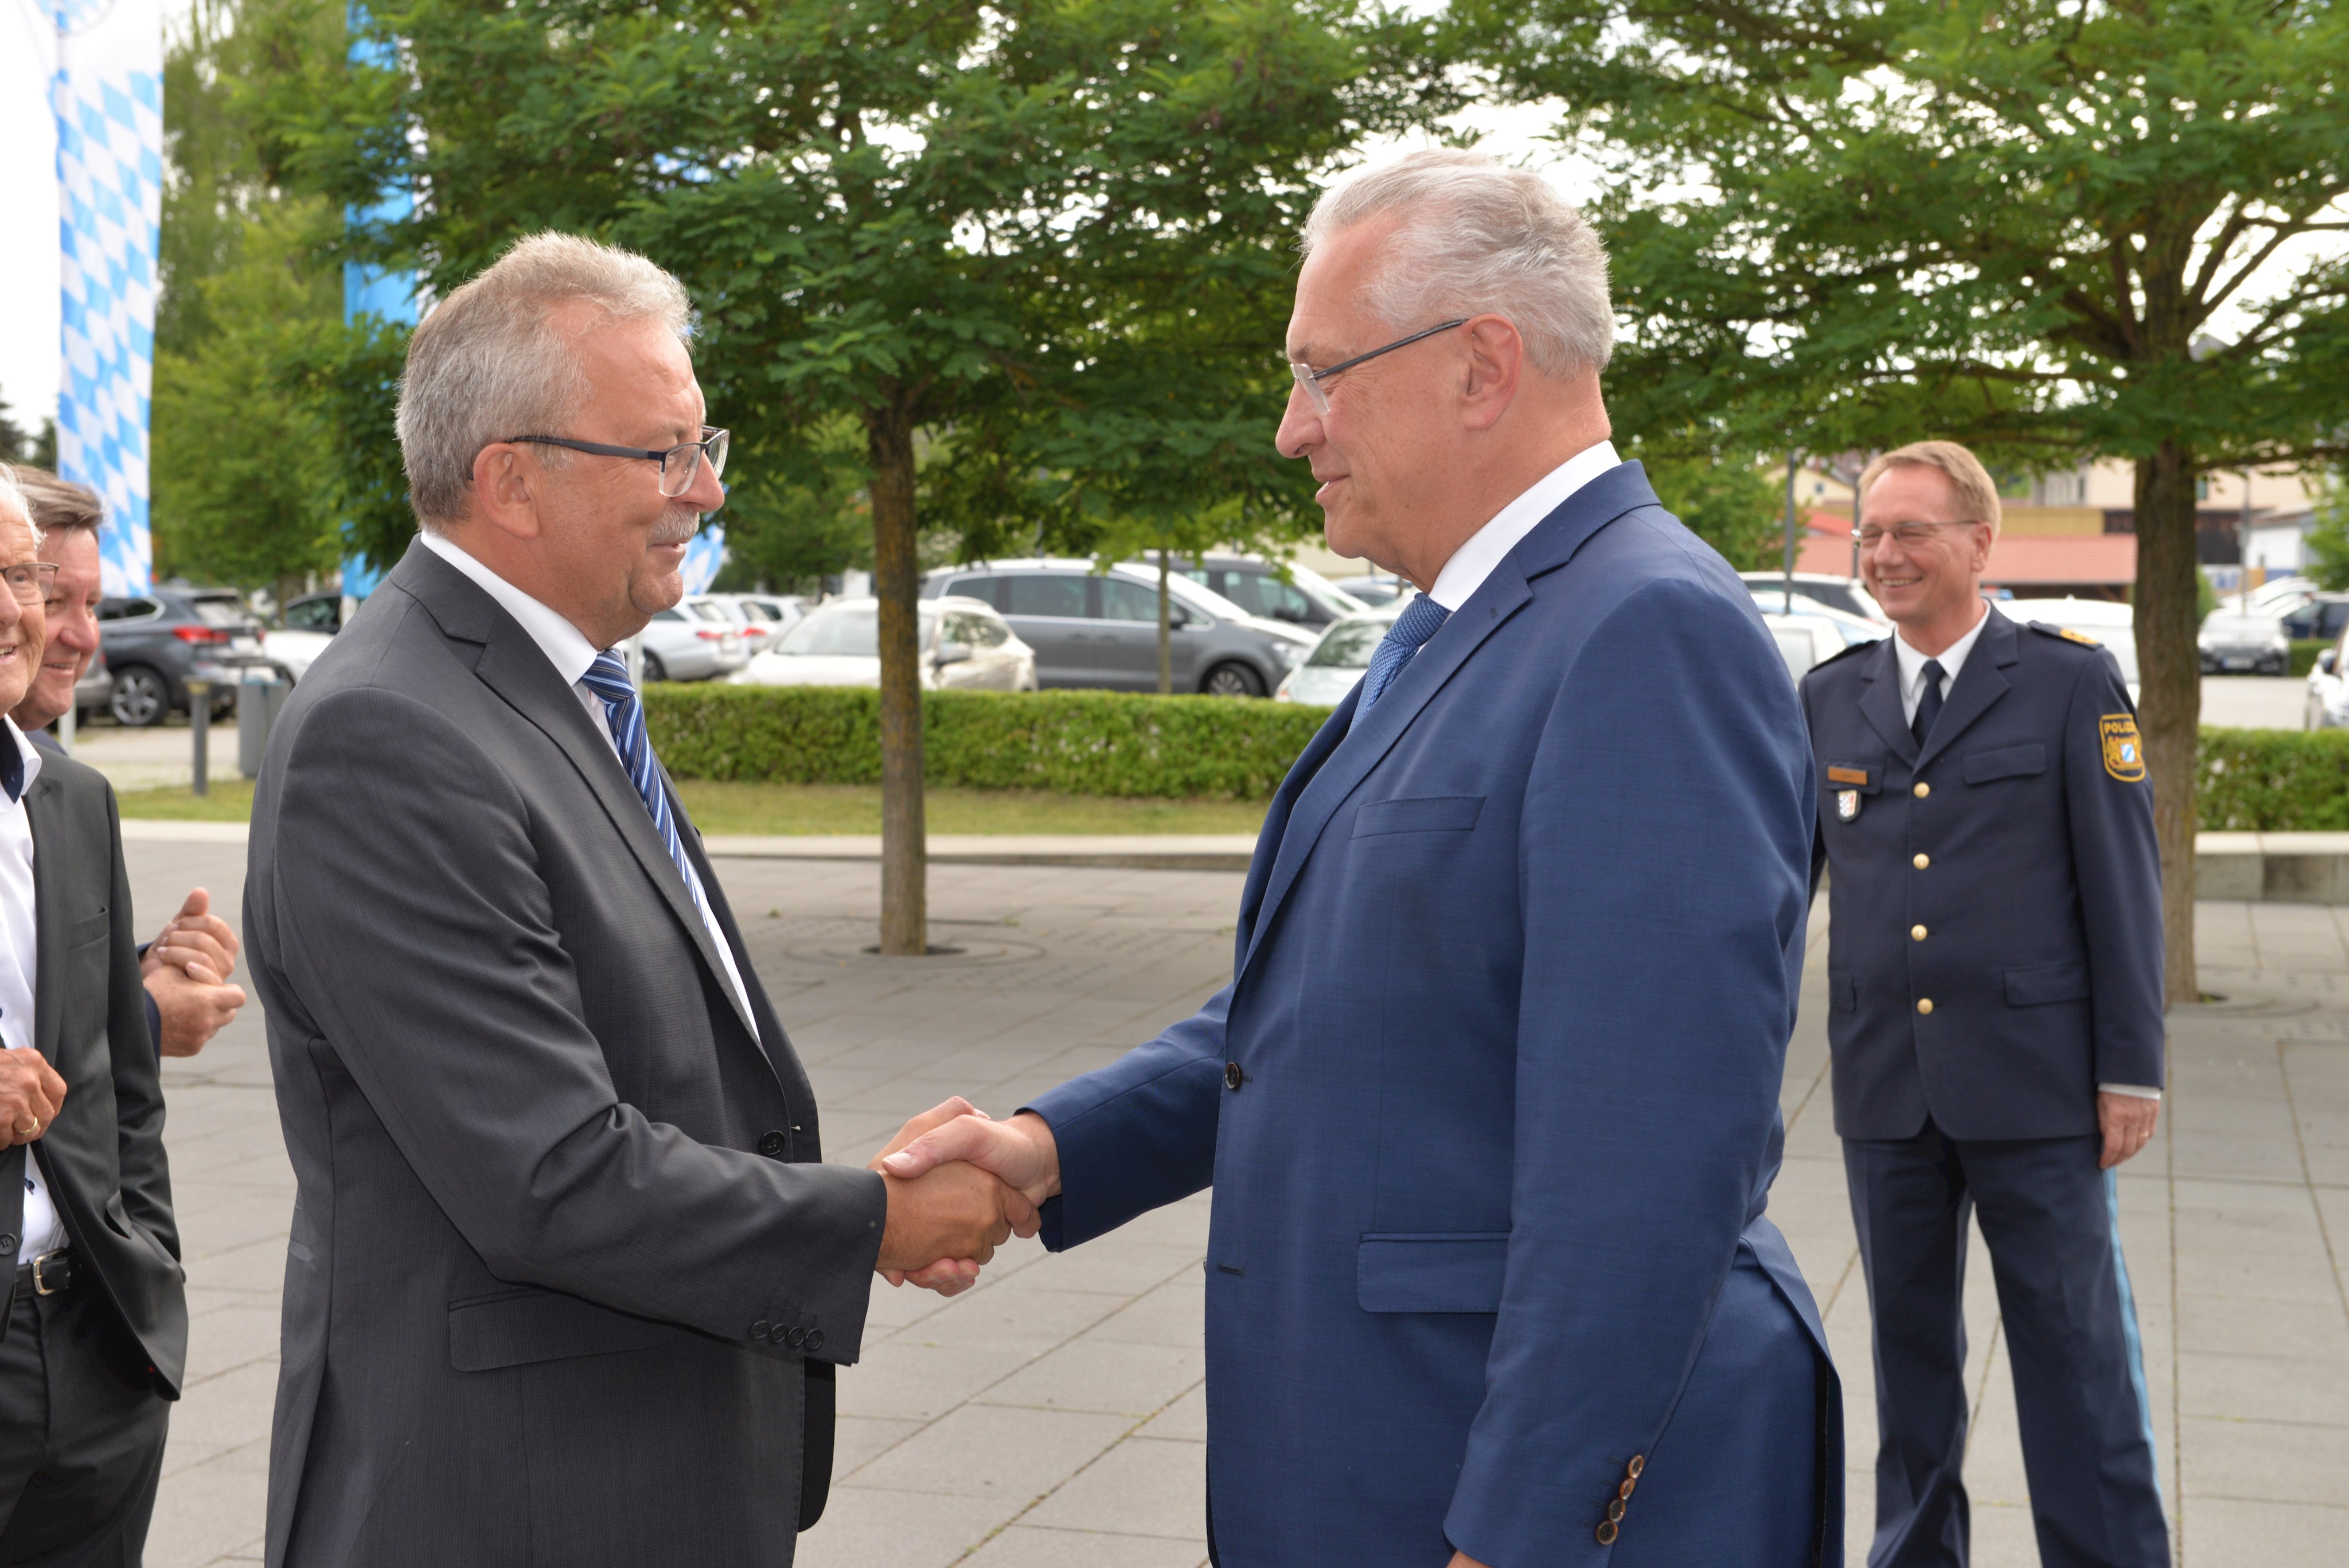 Landrat Josef Laumer begrüßt Ehrengast Joachim Herrmann, Bayerischer Innenminister, der als Festredner fungierte.